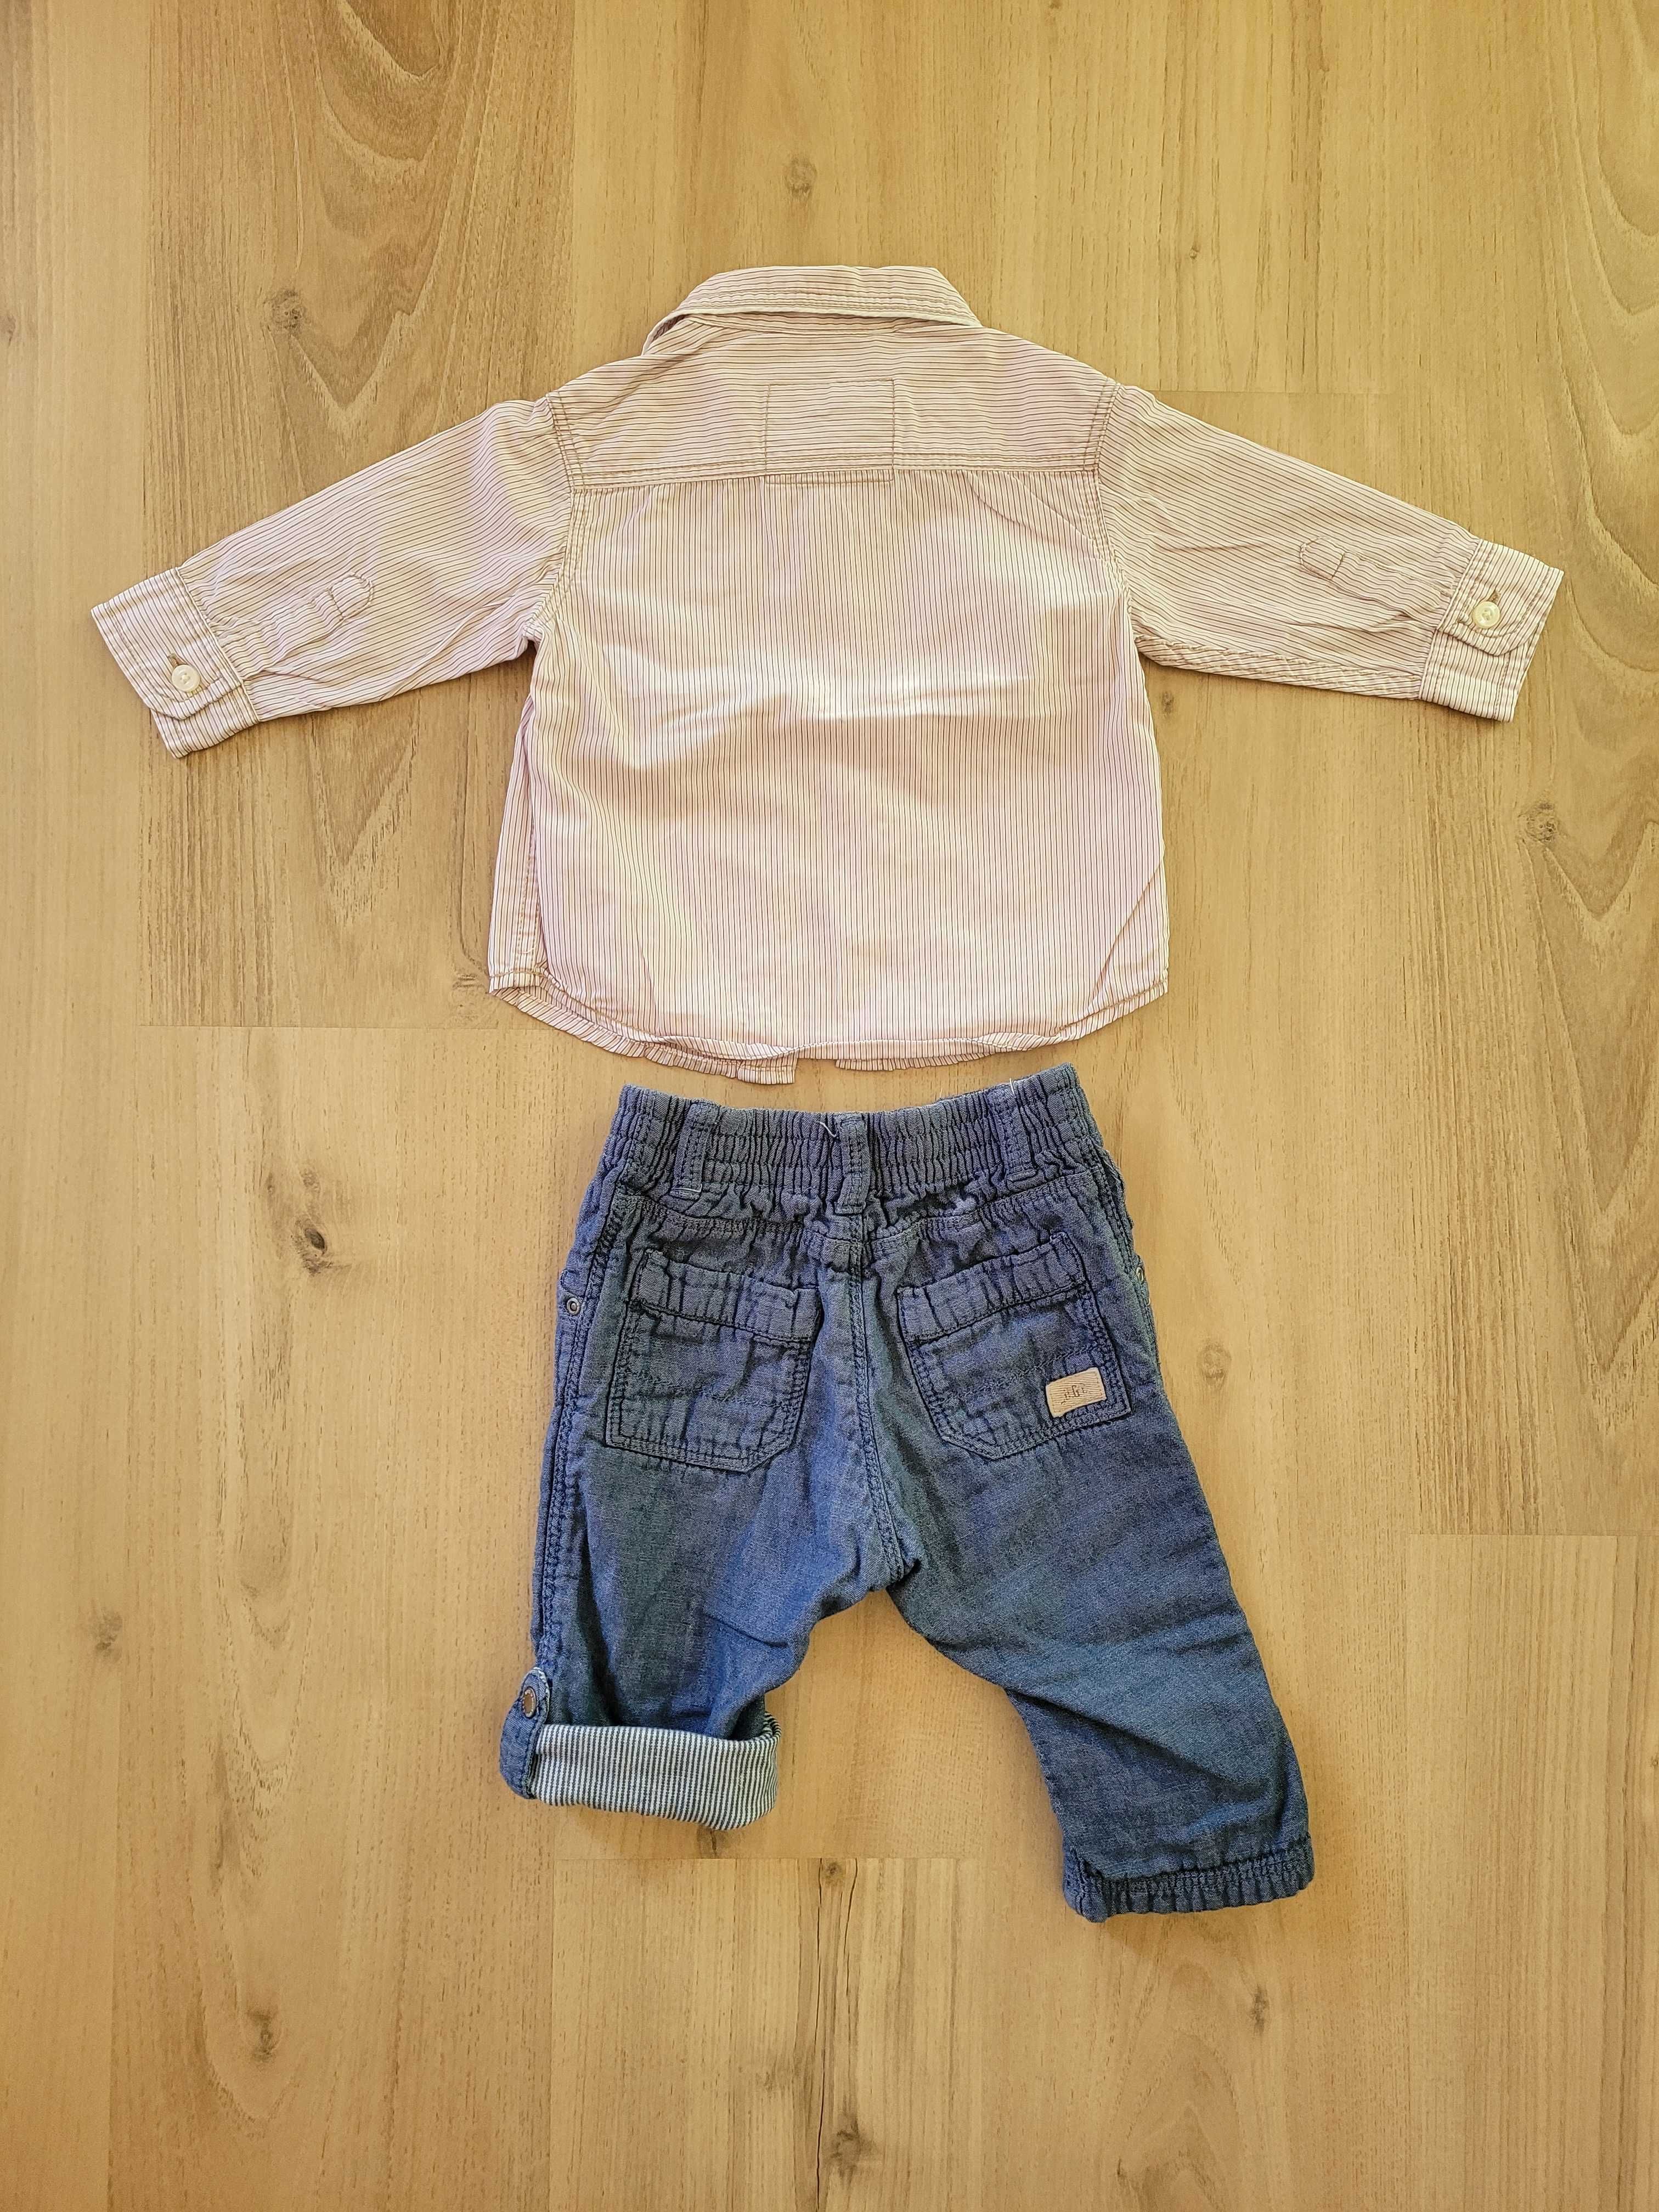 Elegancki zestaw komplet spodnie koszula dla chłopca 80cm